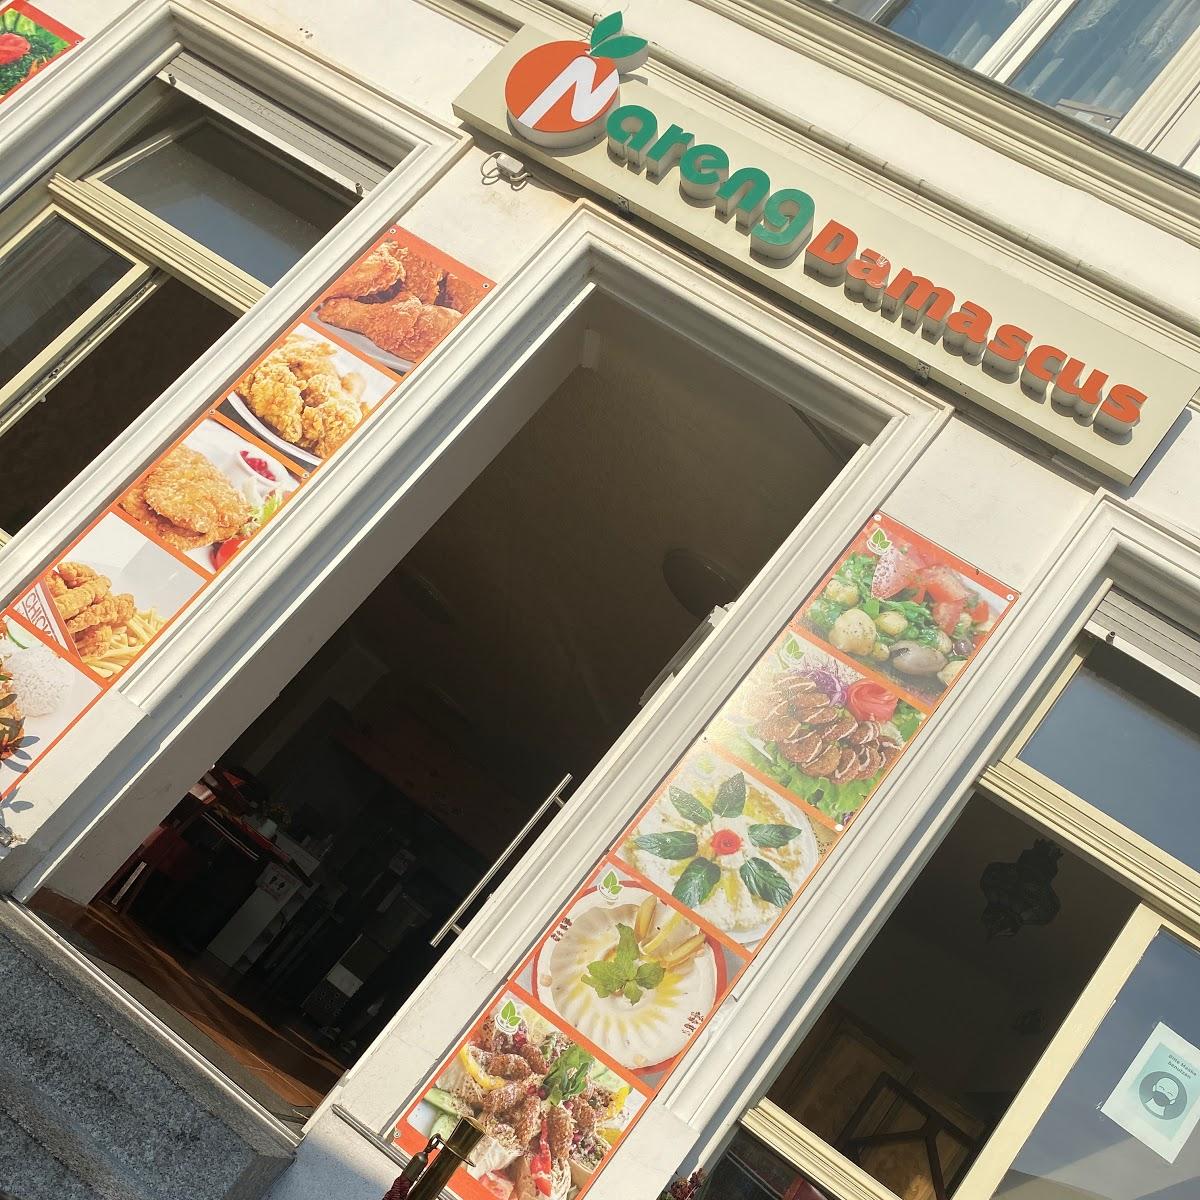 Restaurant "Nareng Damascus" in Stralsund